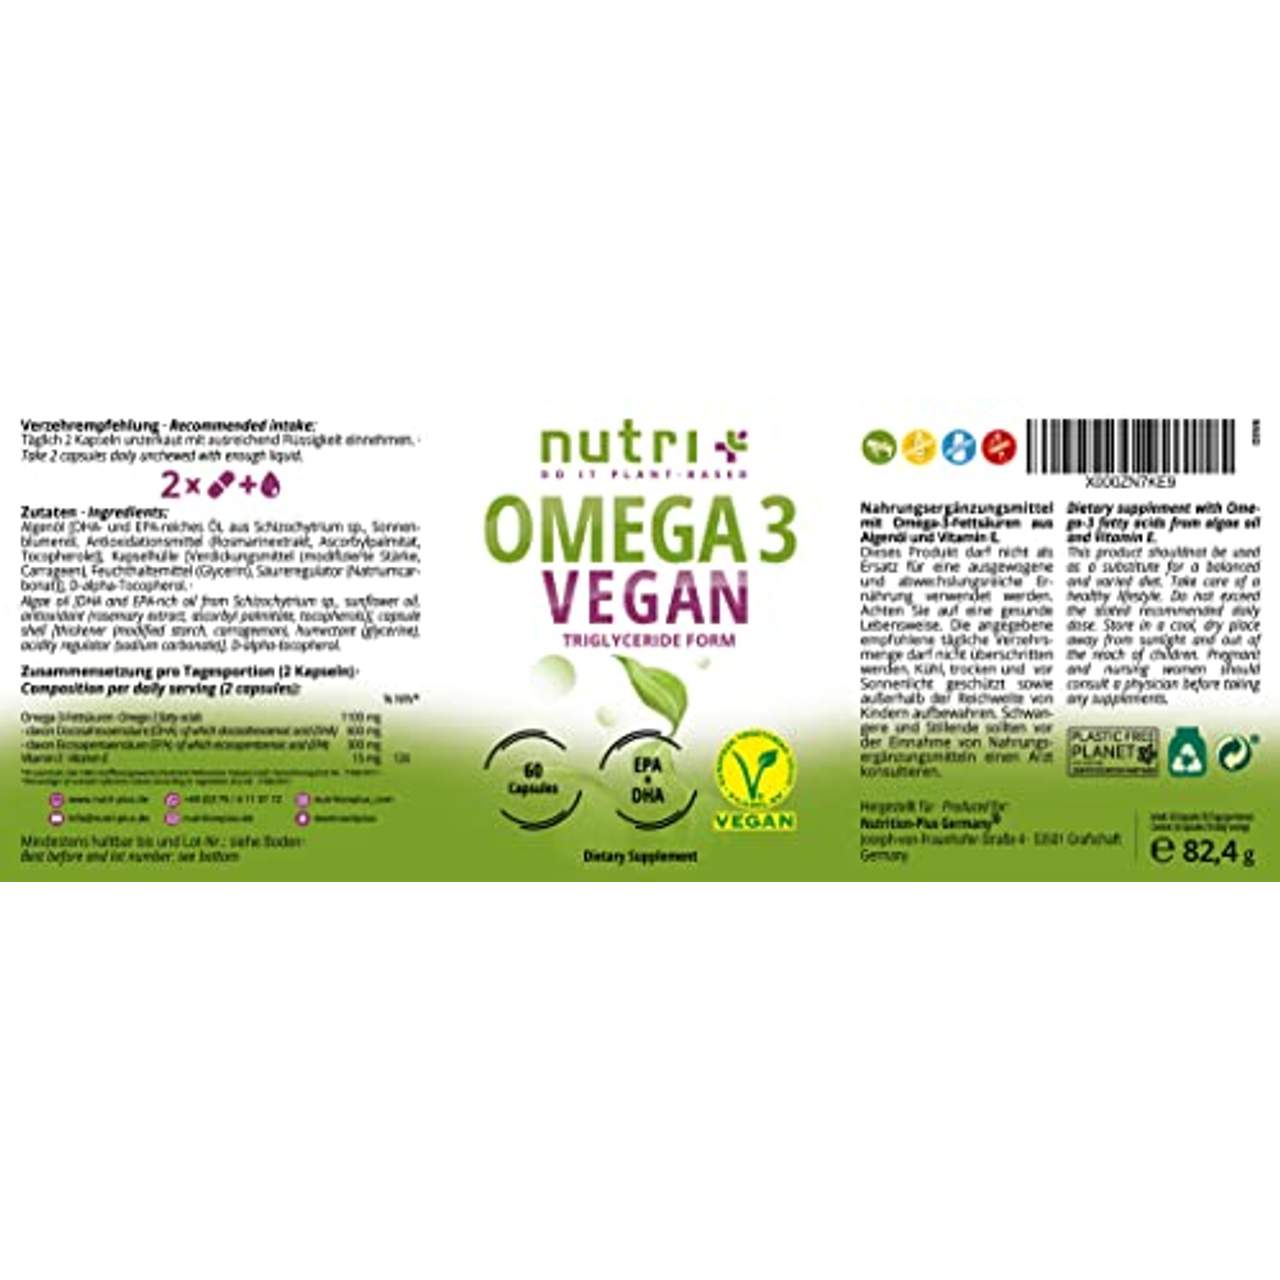 Nutri + OMEGA-3 Vegan